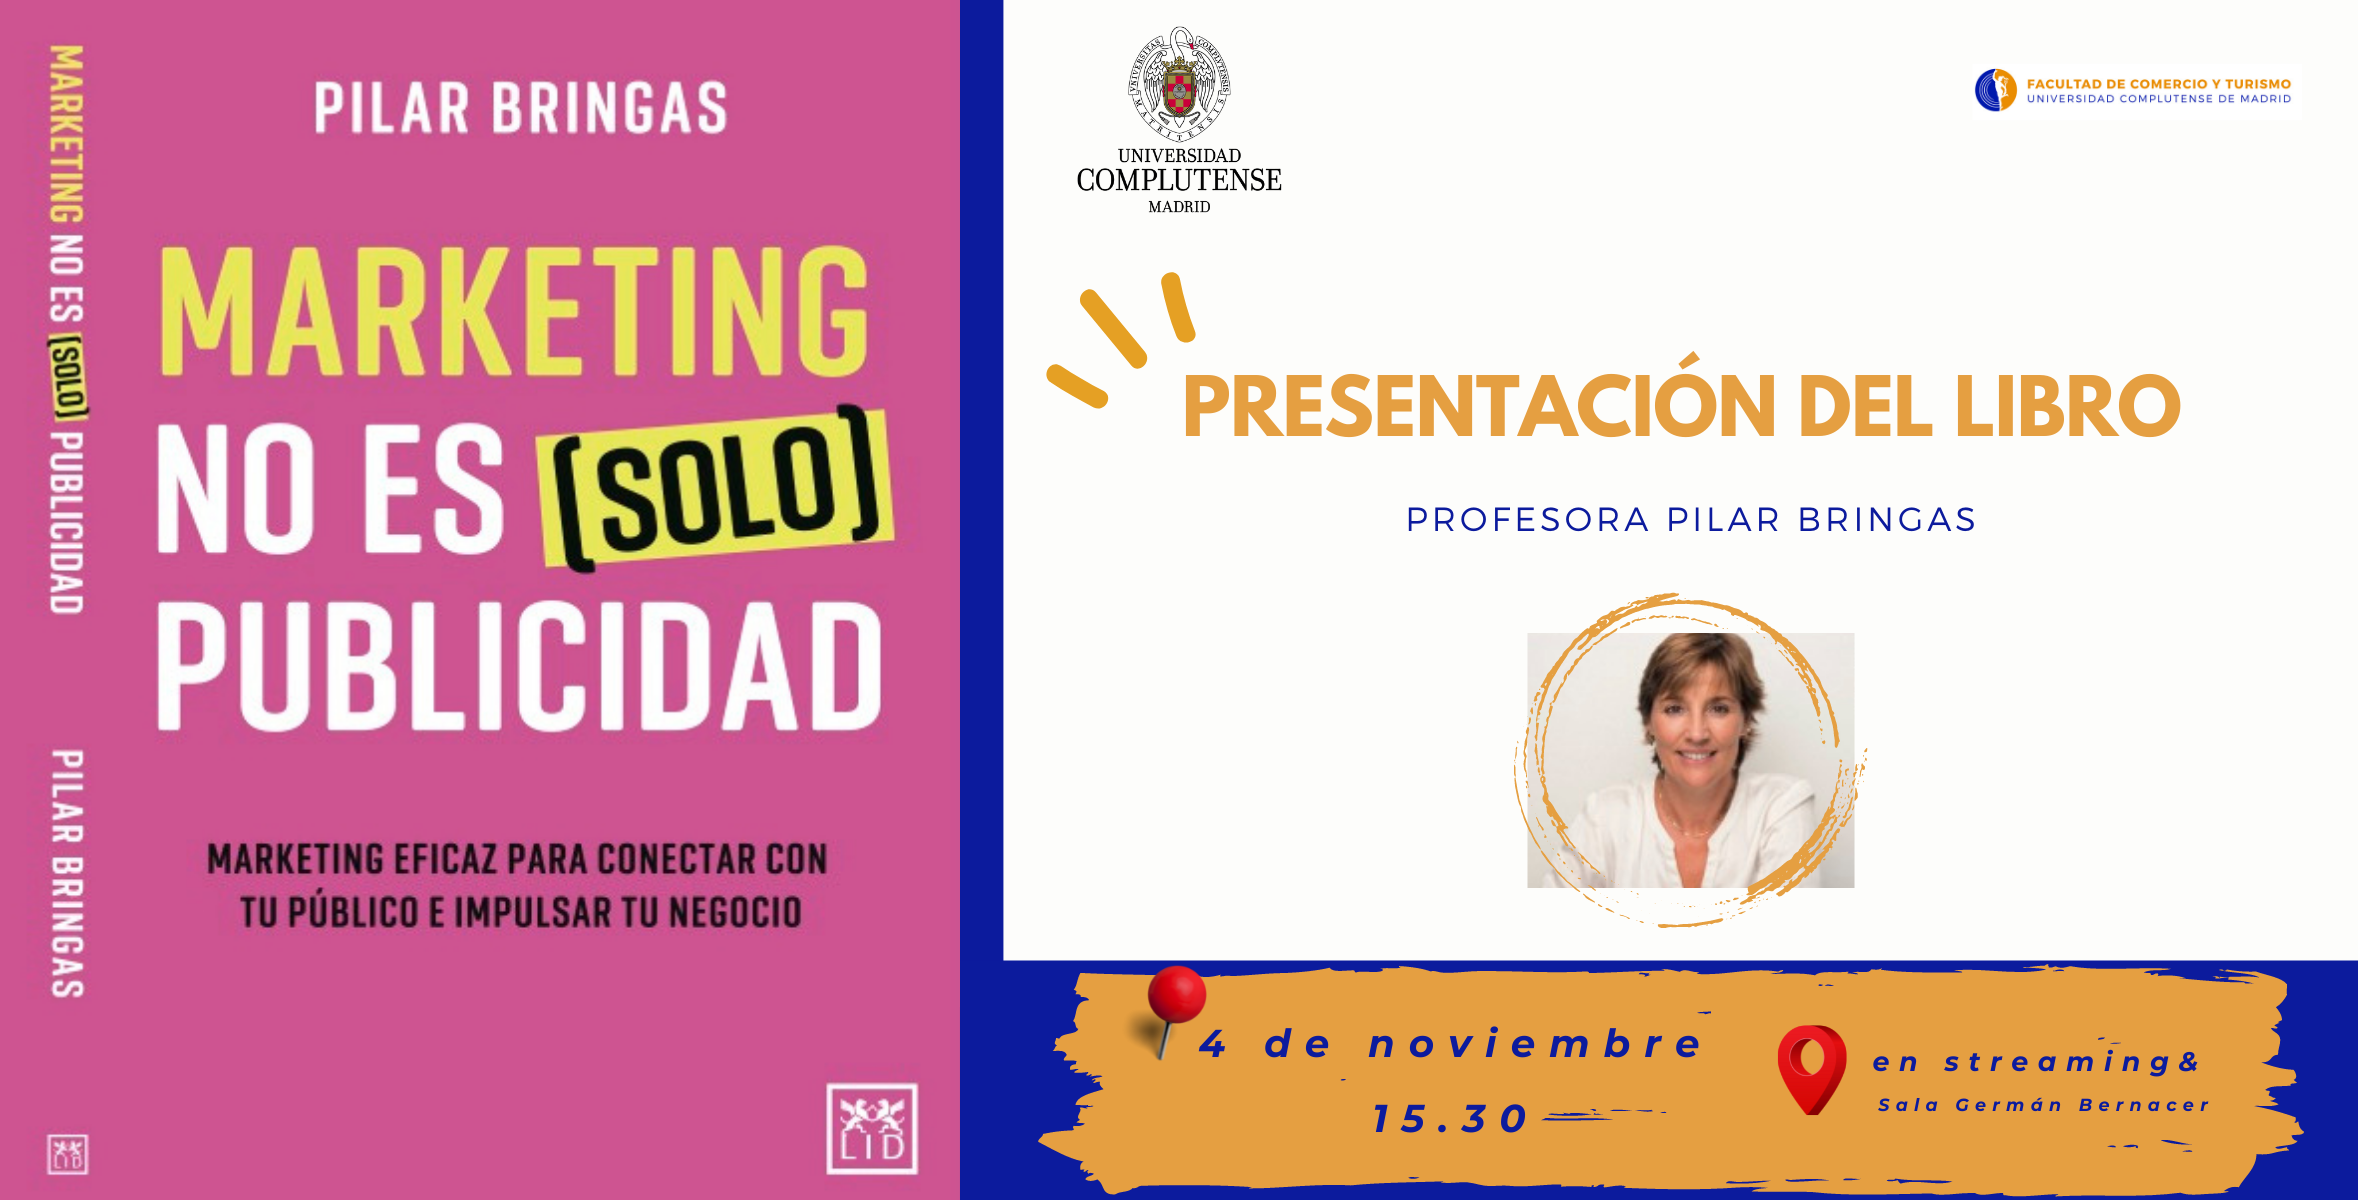 Presentación del libro de la Profesora Pilar Bringas